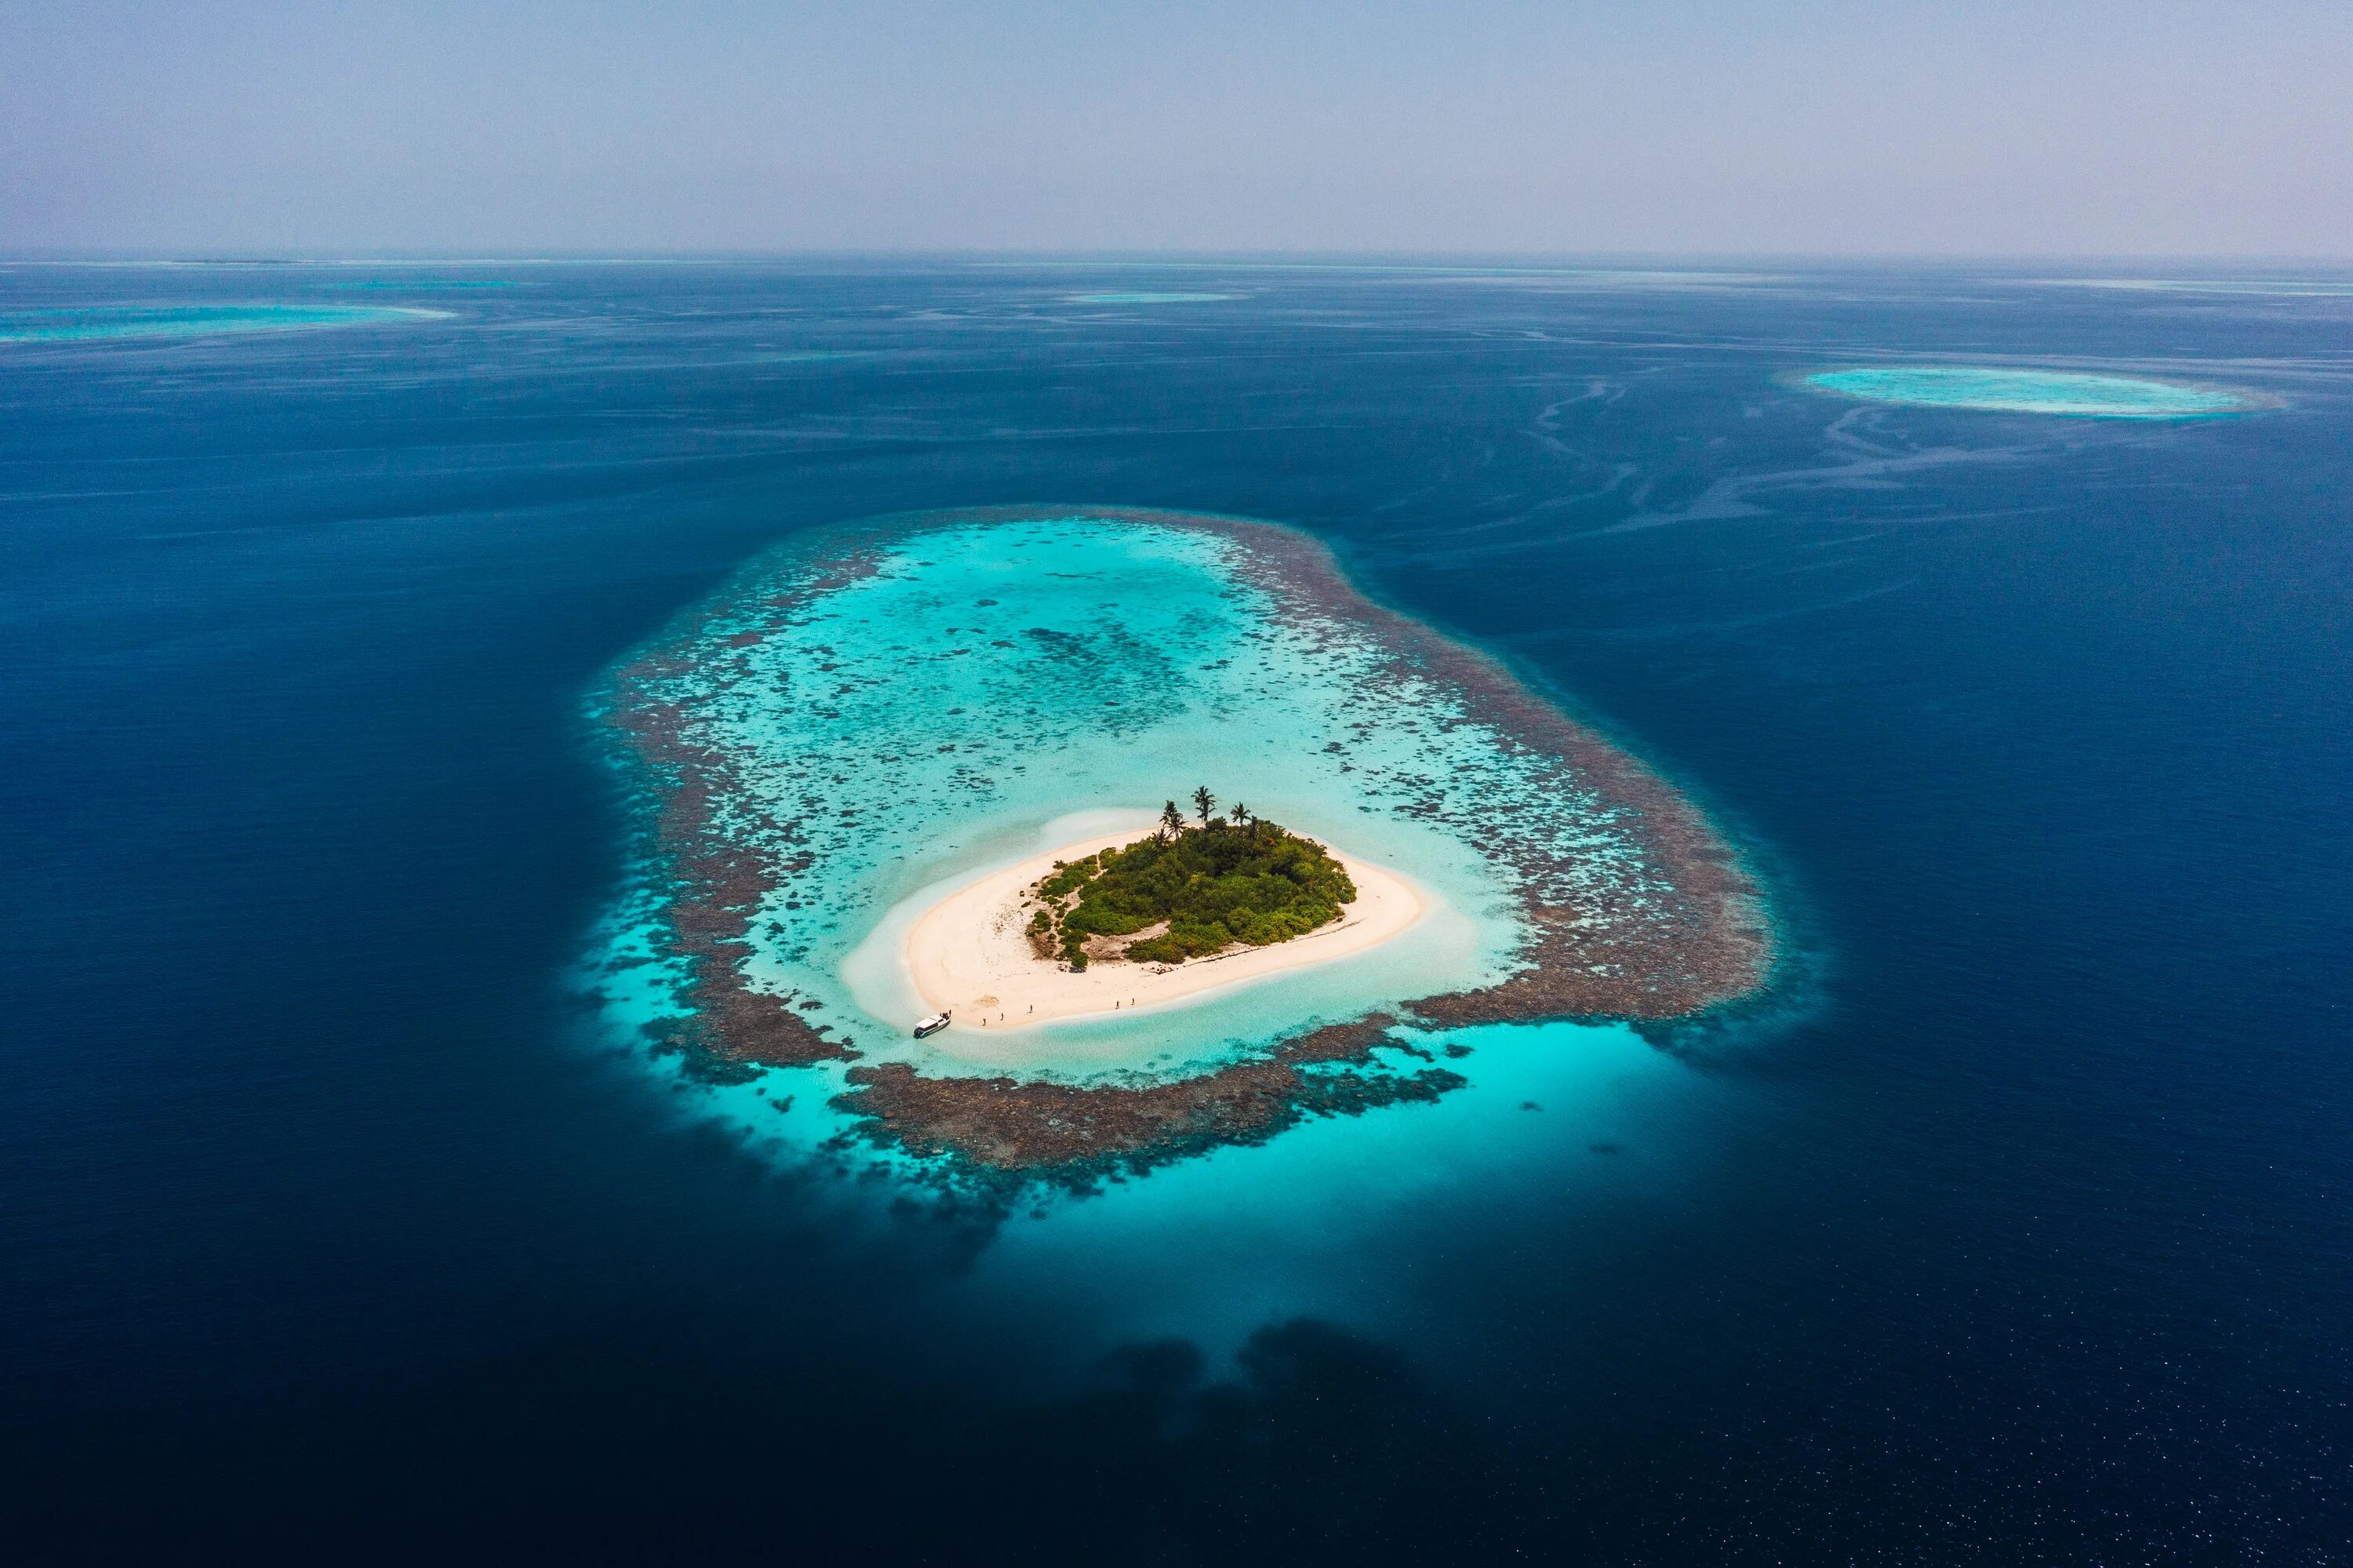 Атоллы Океании. Архипелаг Туамоту. Атолл в тихом океане. Атоллы Мальдив. Индийский океан природа индийского океана